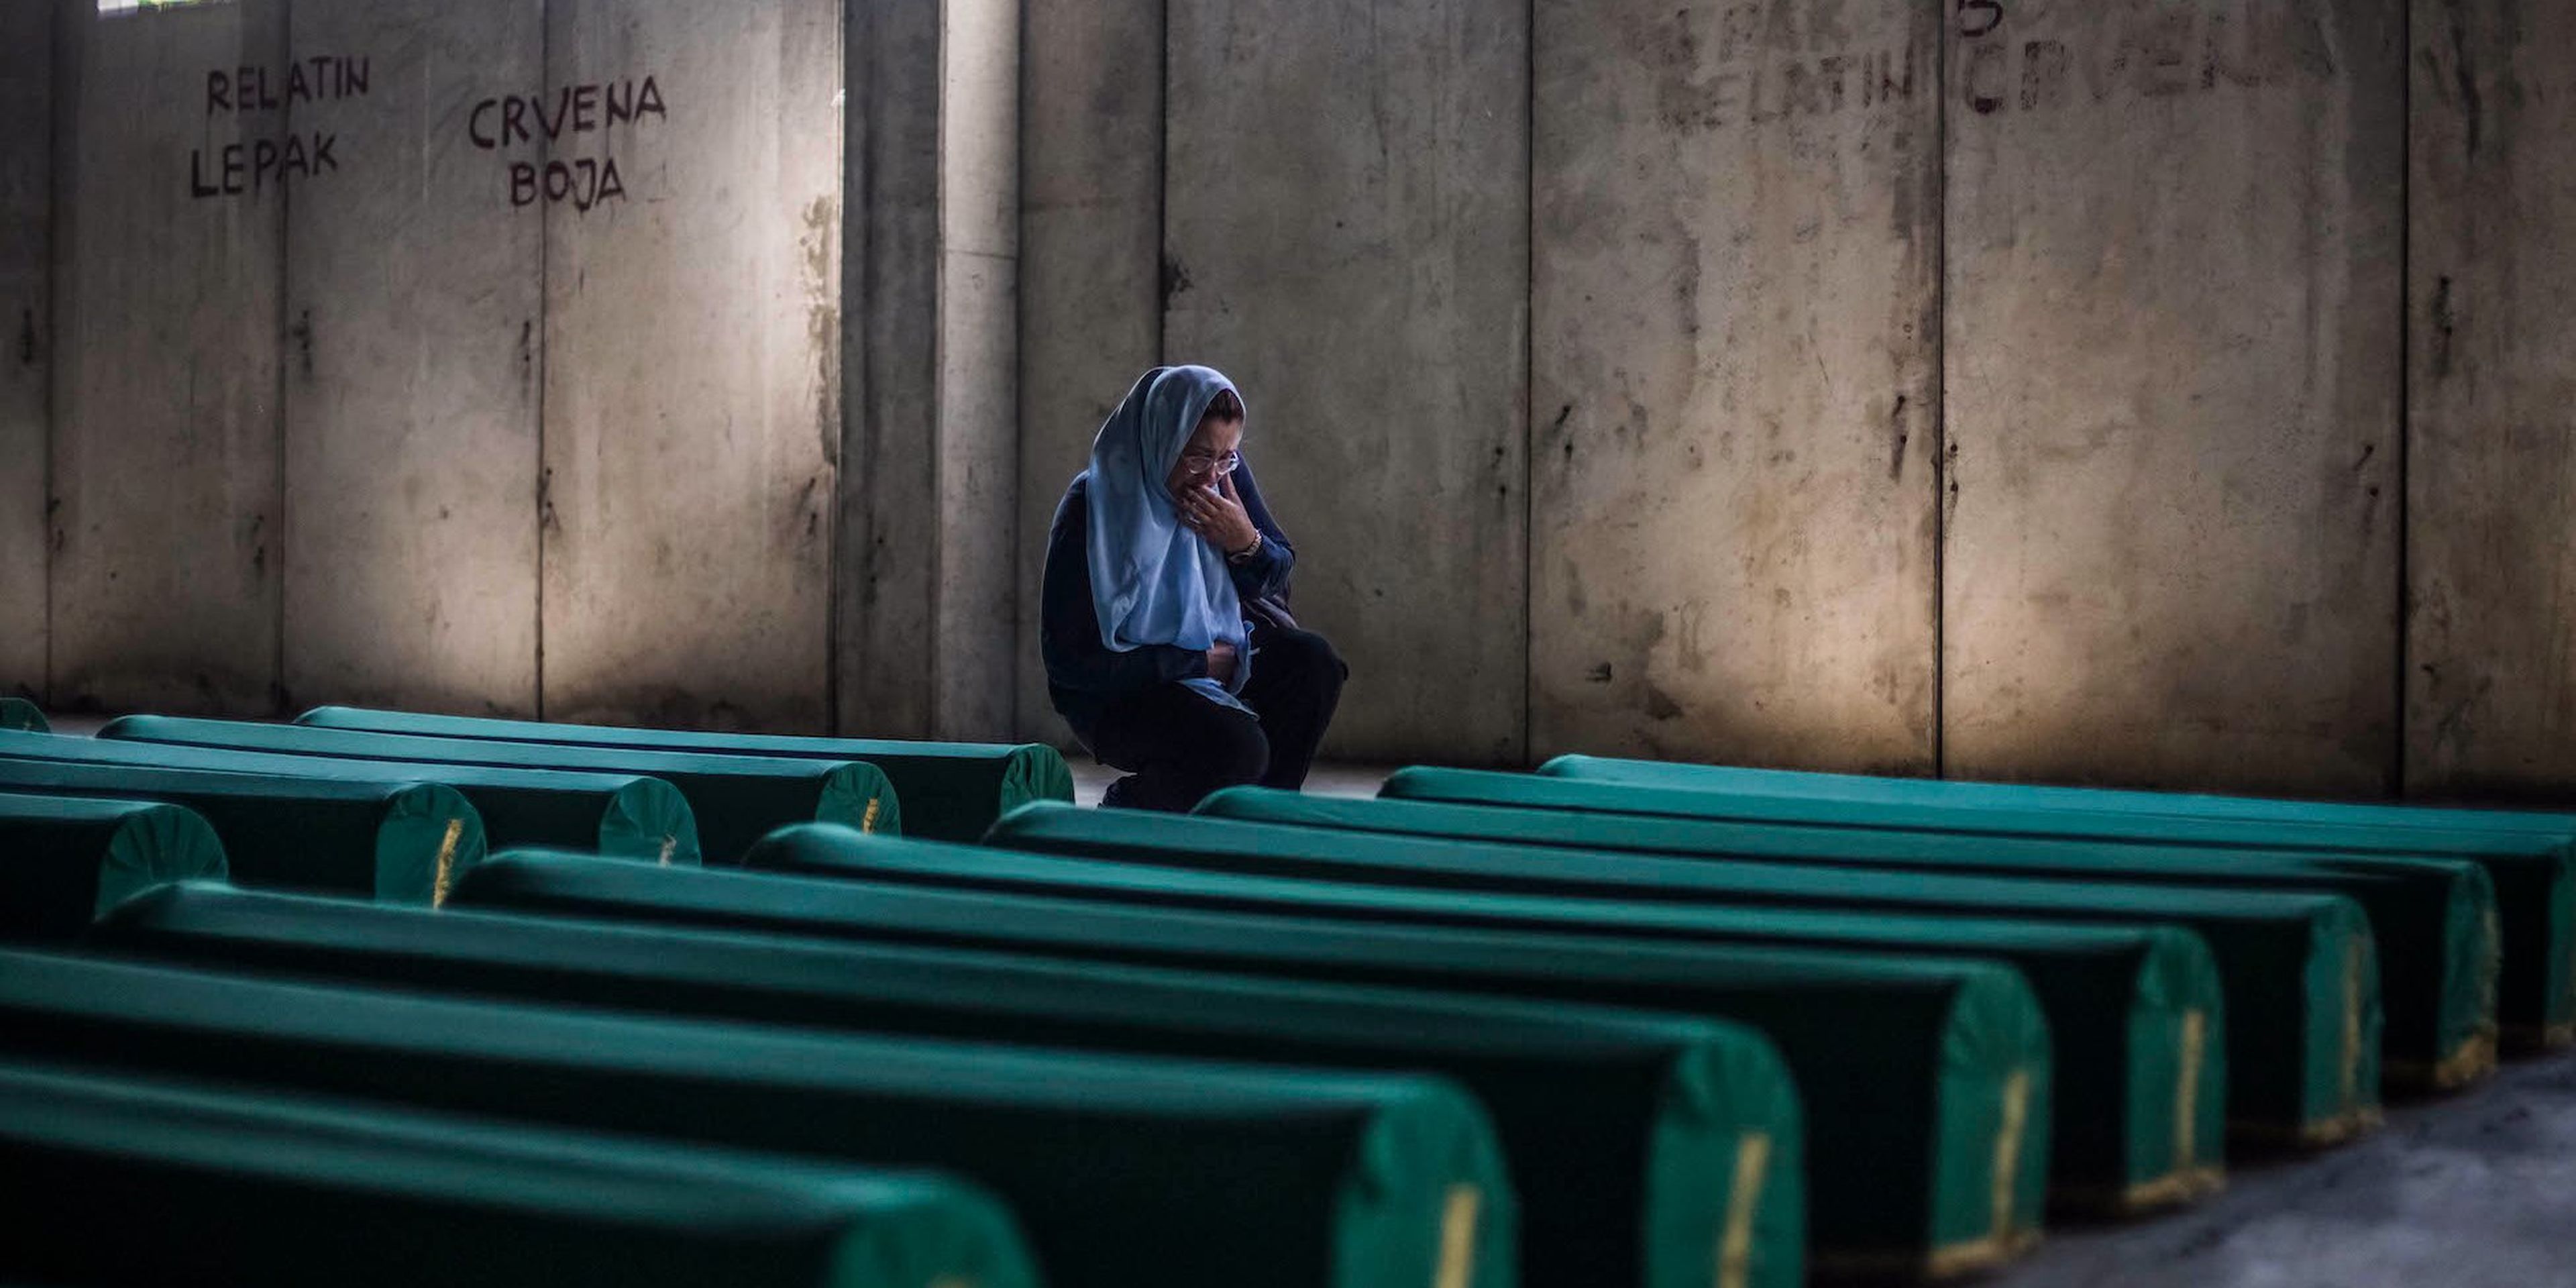 Una mujer llora en un cementerio por las víctimas de la masacre de Srebrenica de 1995, que Ratko Mladic dirigió.